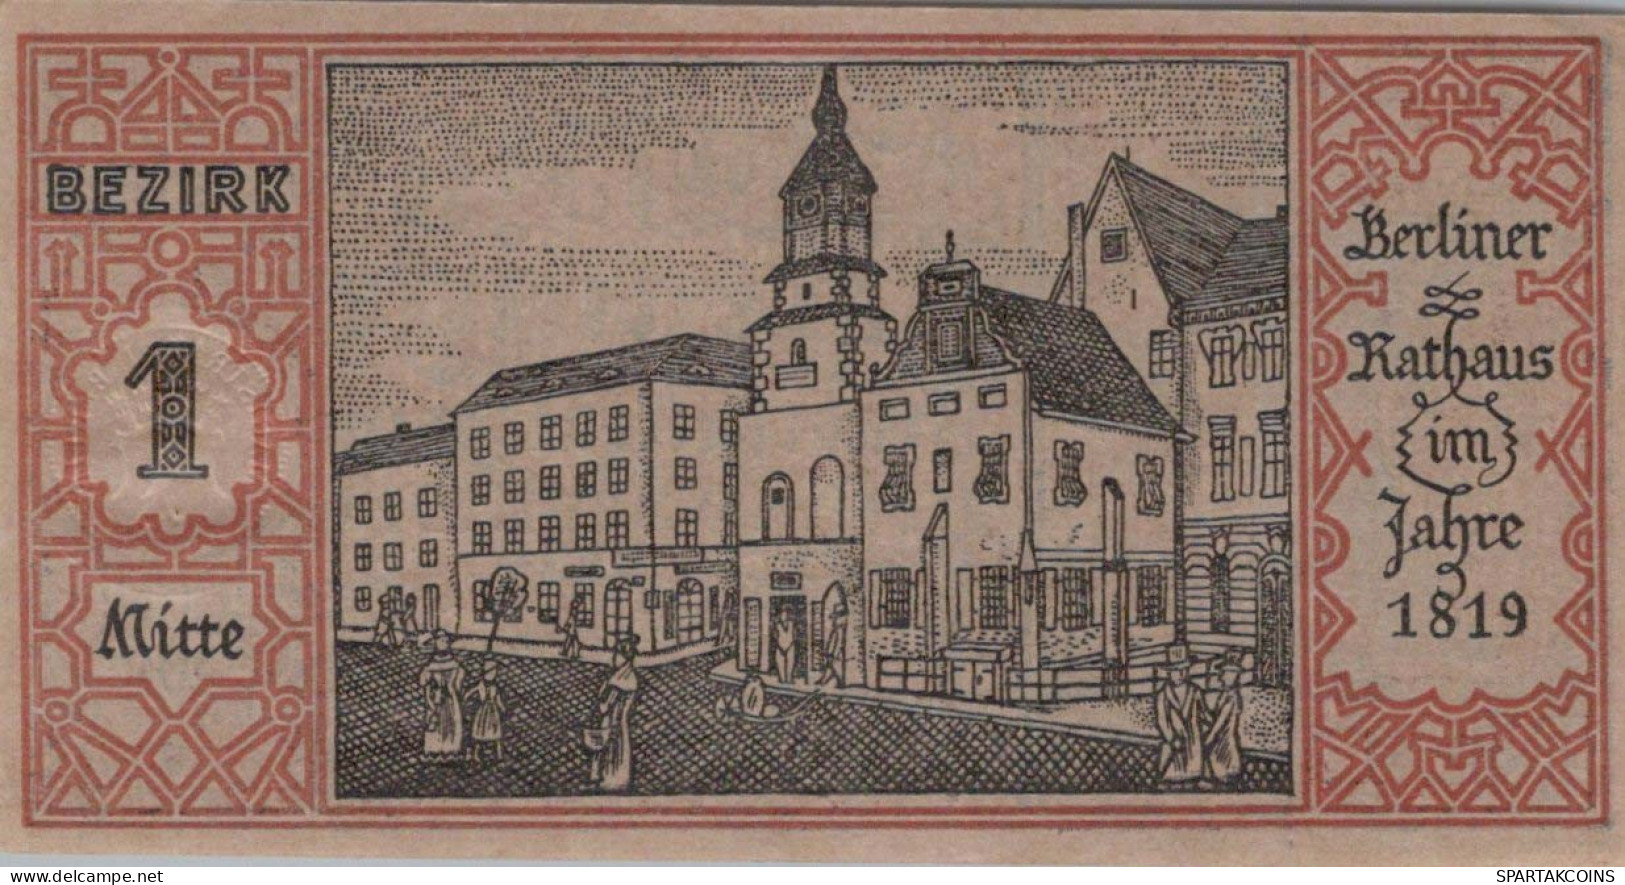 50 PFENNIG 1921 Stadt BERLIN UNC DEUTSCHLAND Notgeld Banknote #PA177 - [11] Emisiones Locales